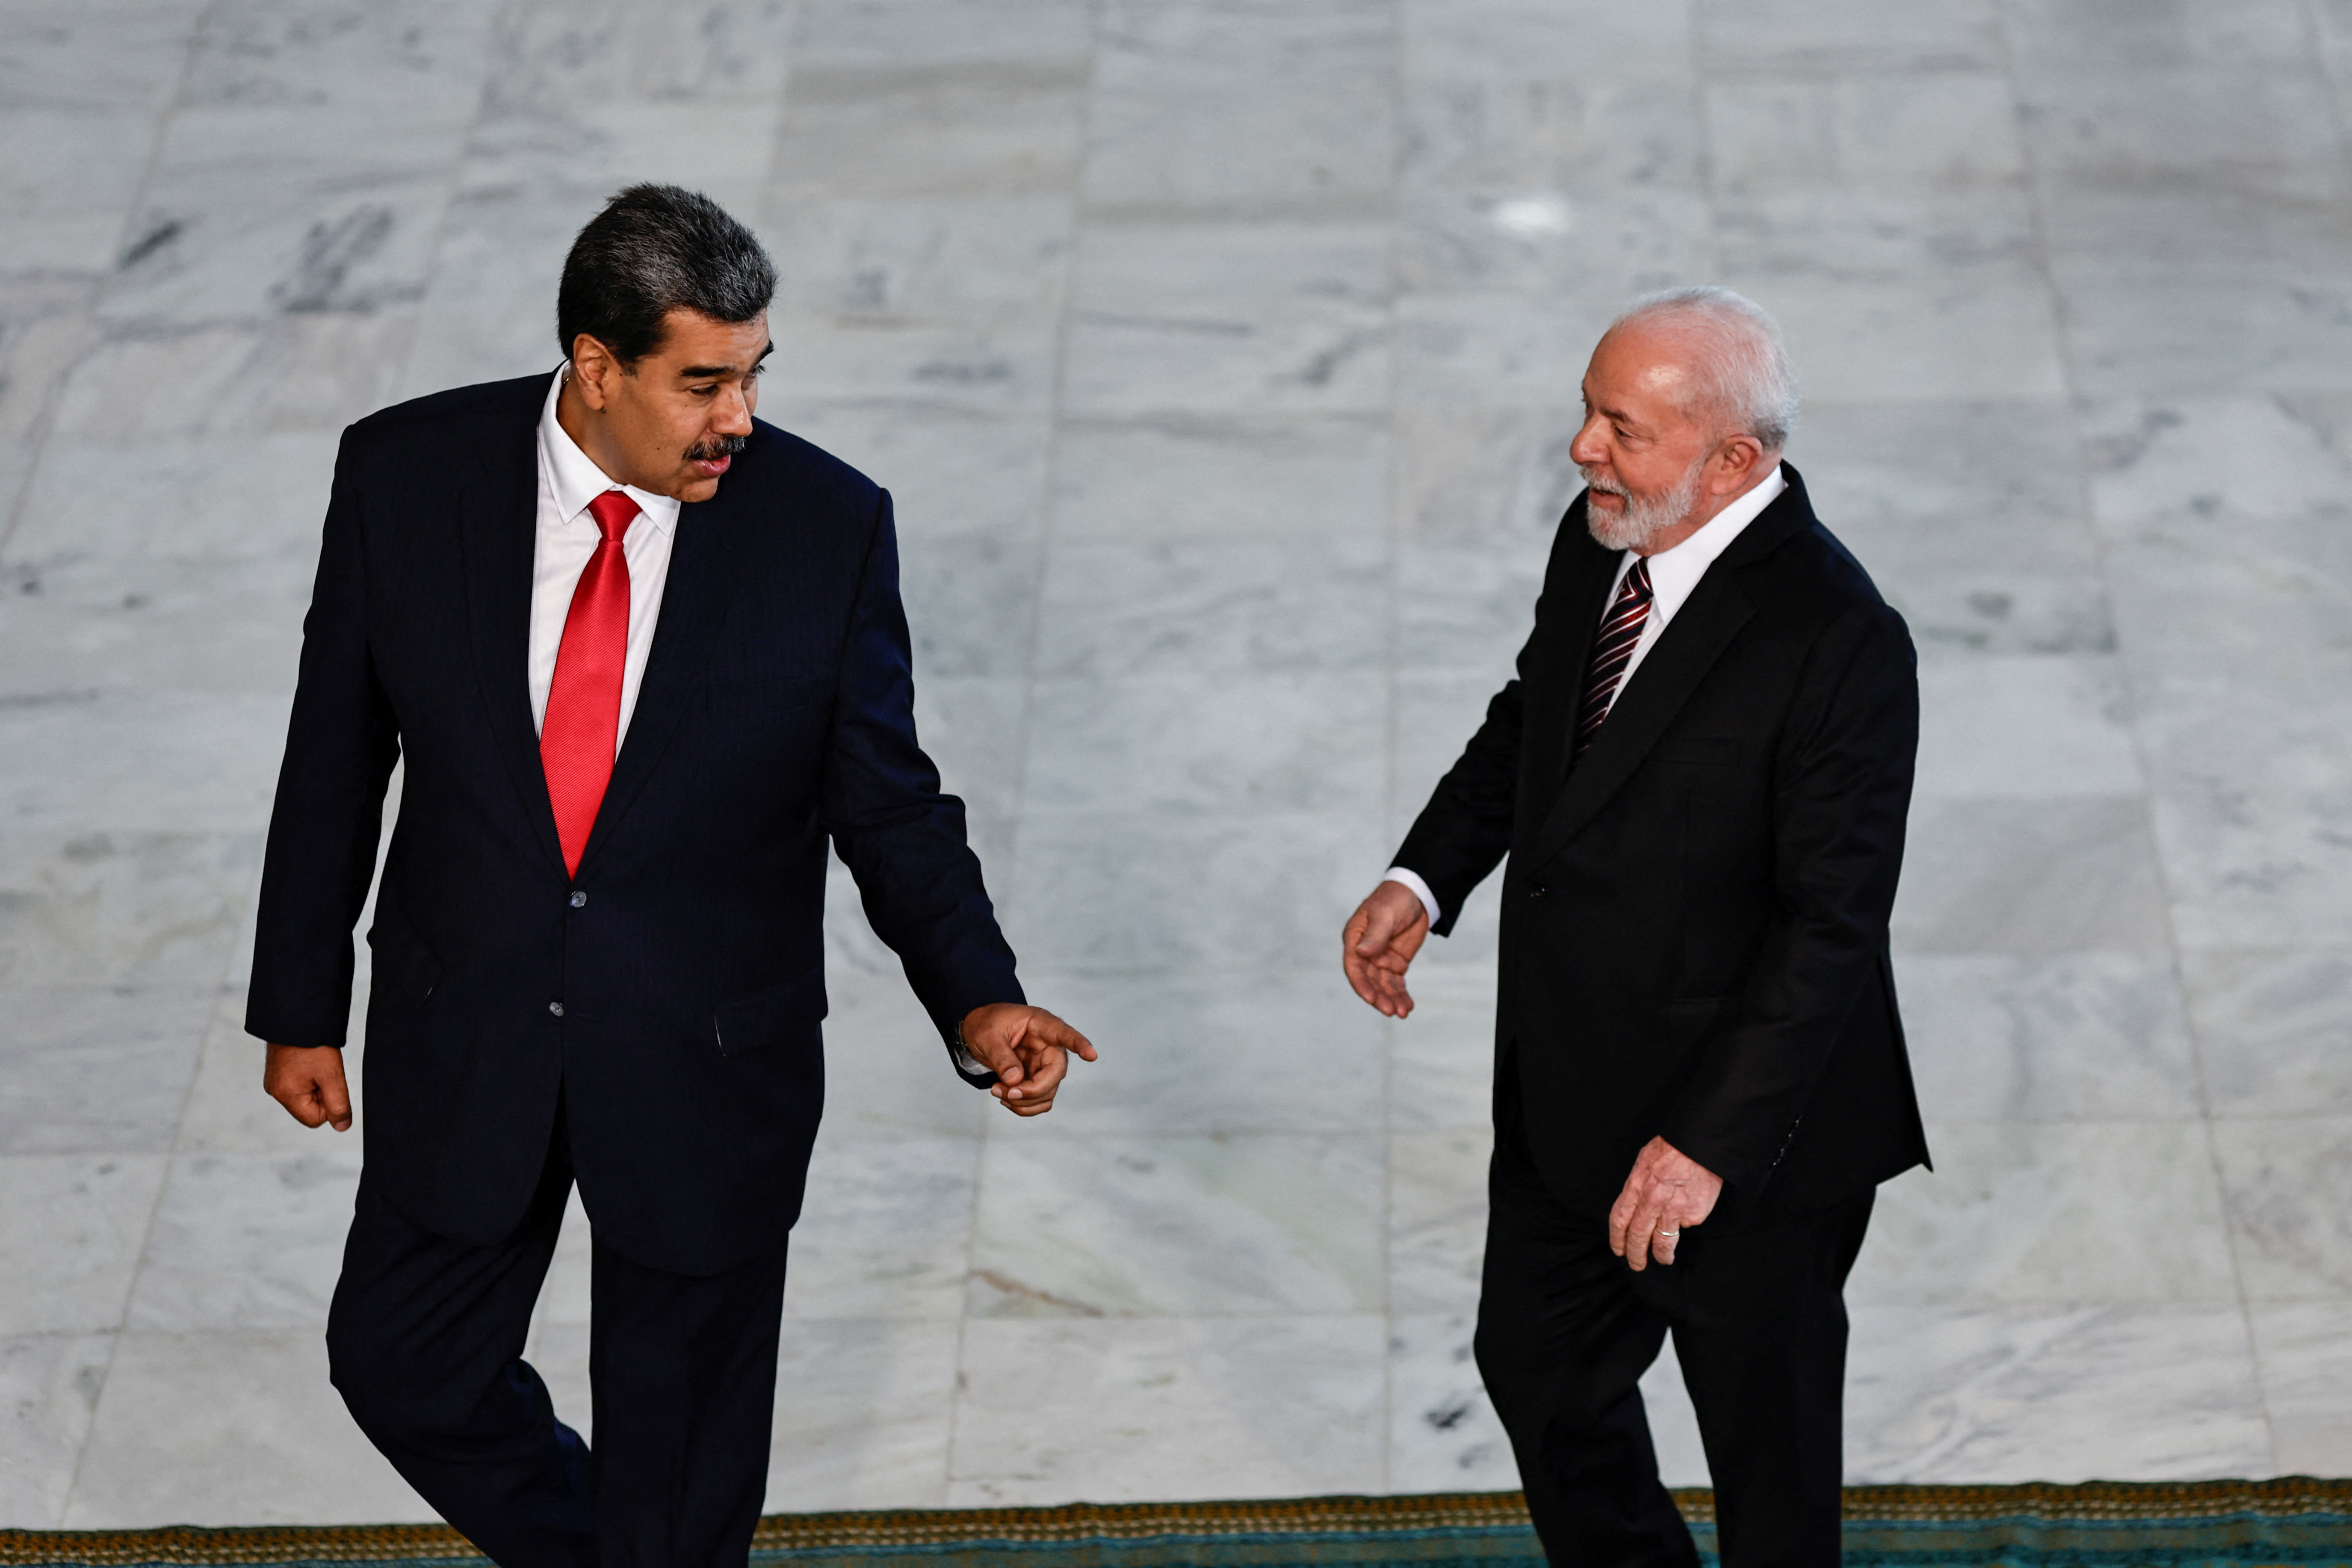 Estados Unidos criticó a Lula da Silva por su defensa de Nicolás Maduro: “Hay que identificar las cosas como son”